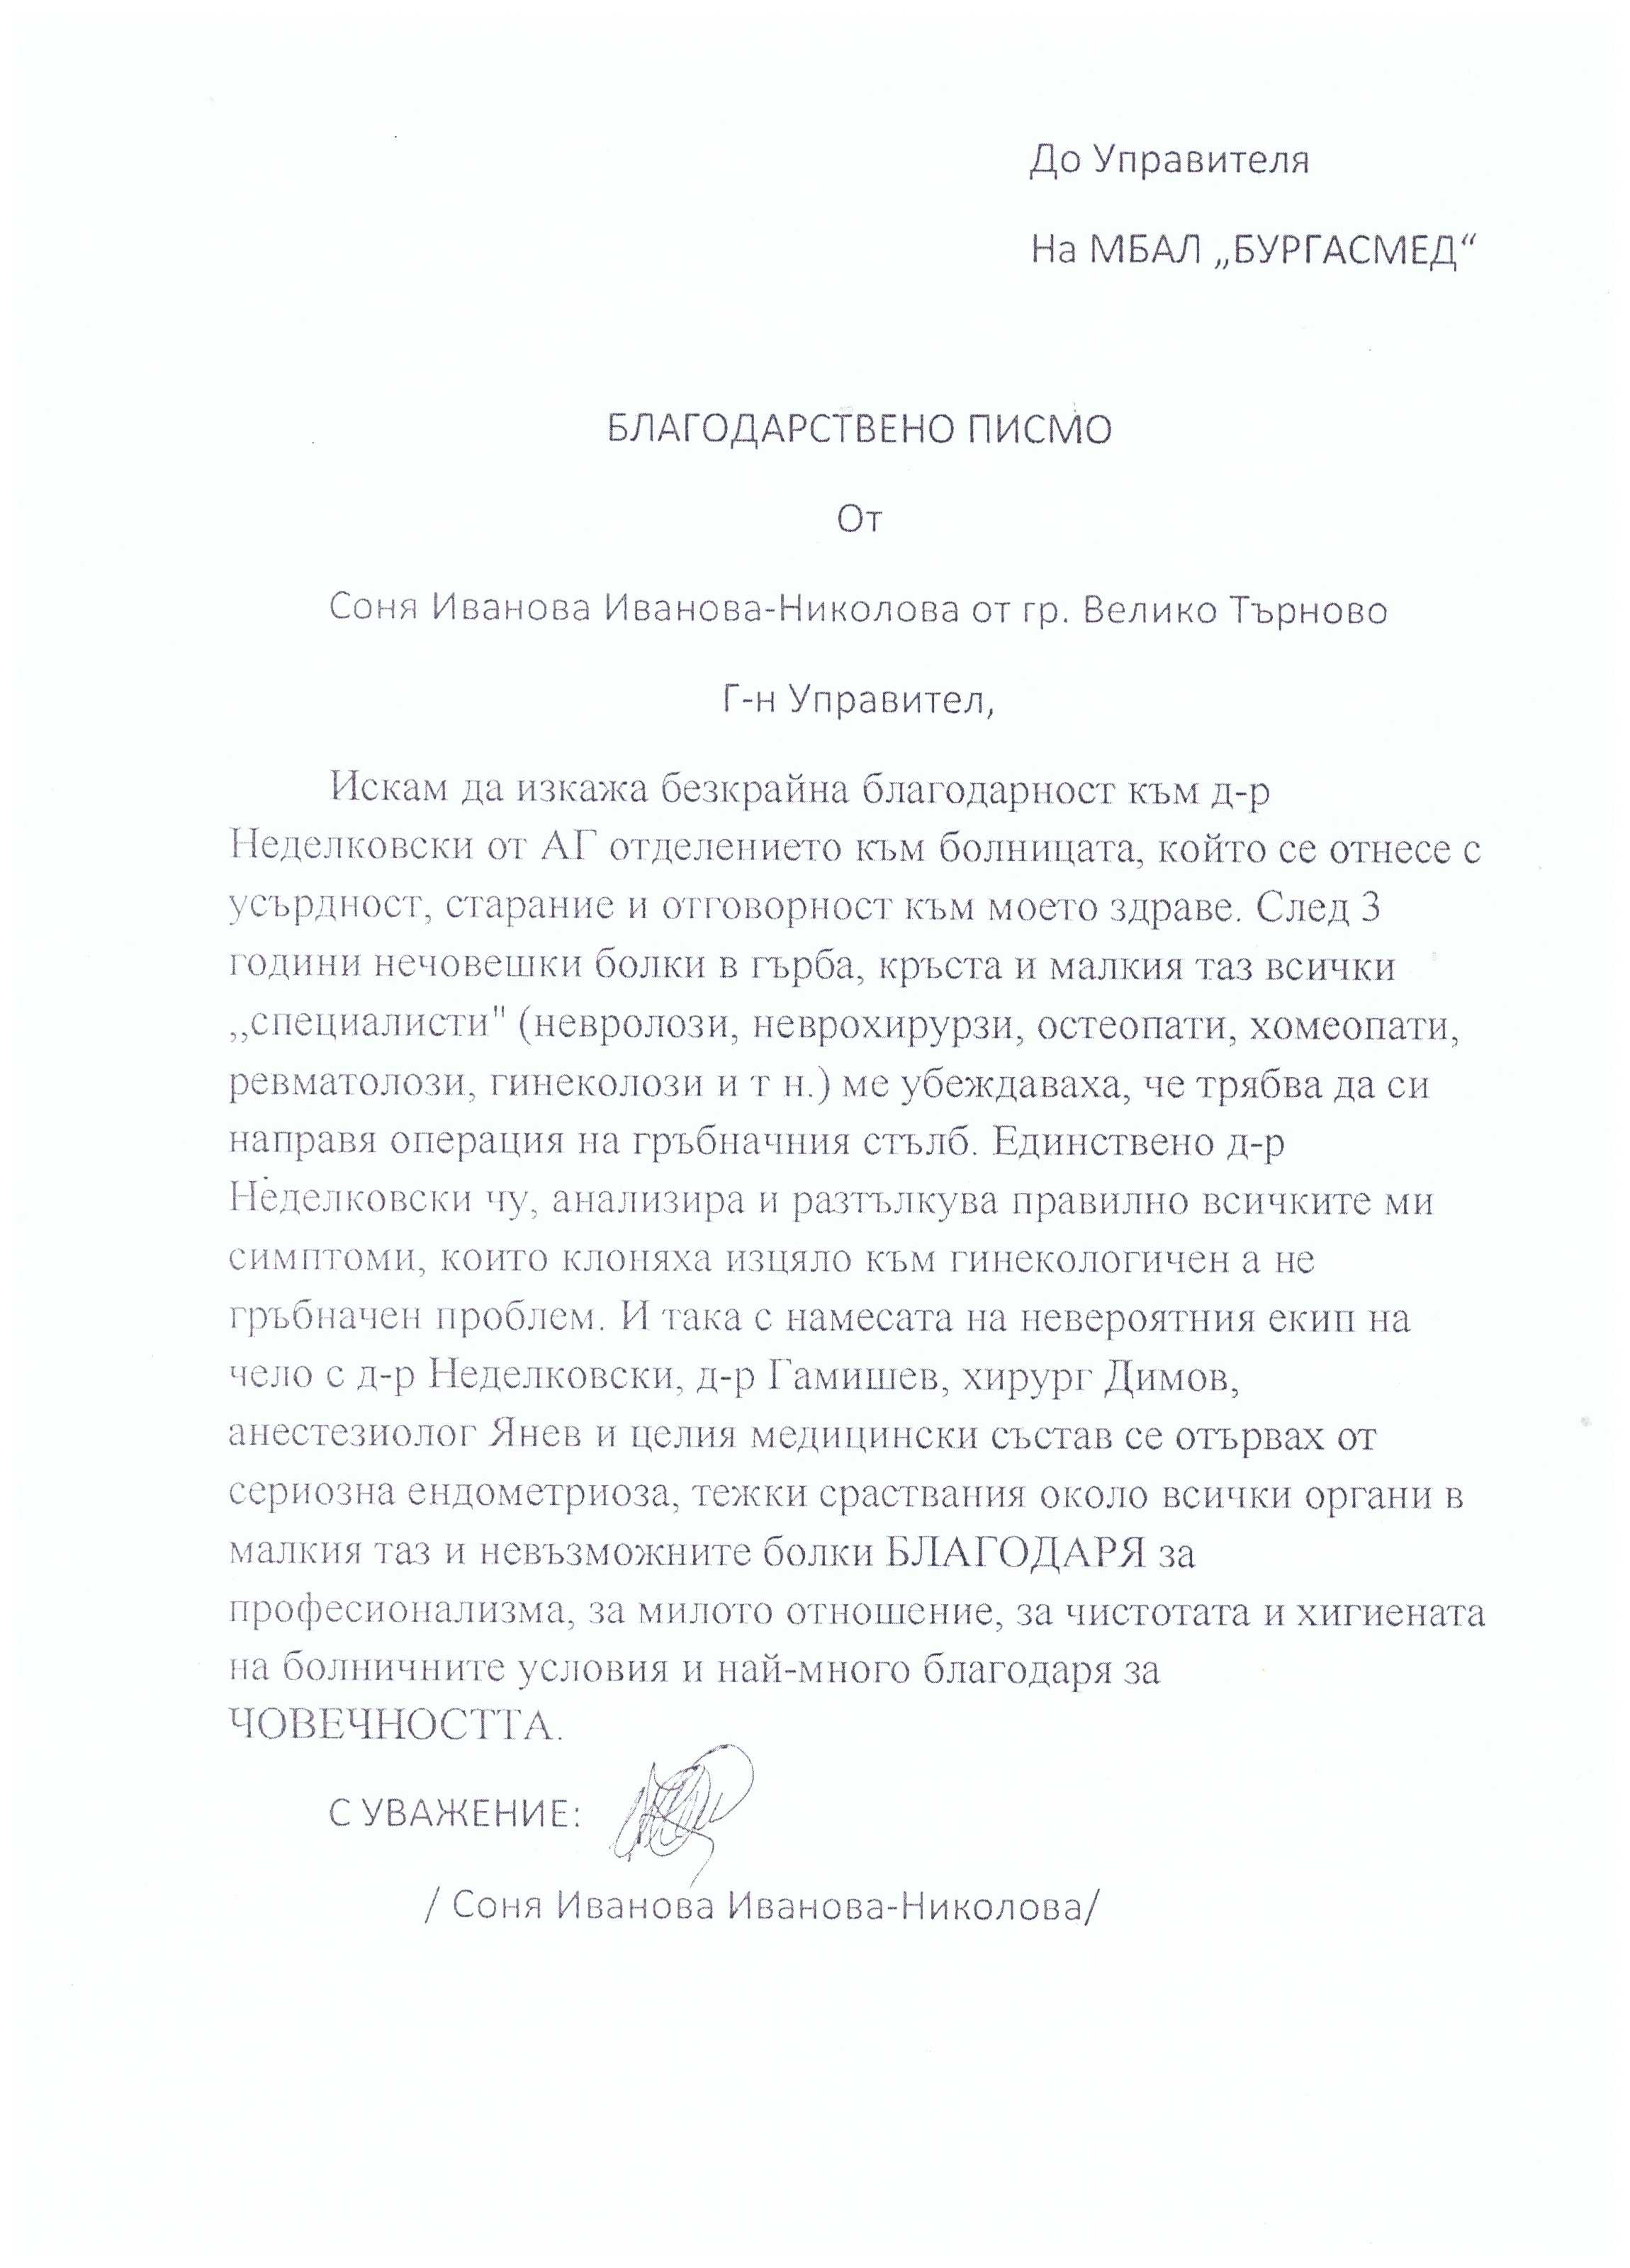 Благодарствено писмо към д-р Петко Димов, Началник отделение по Хирургия и неговия екип